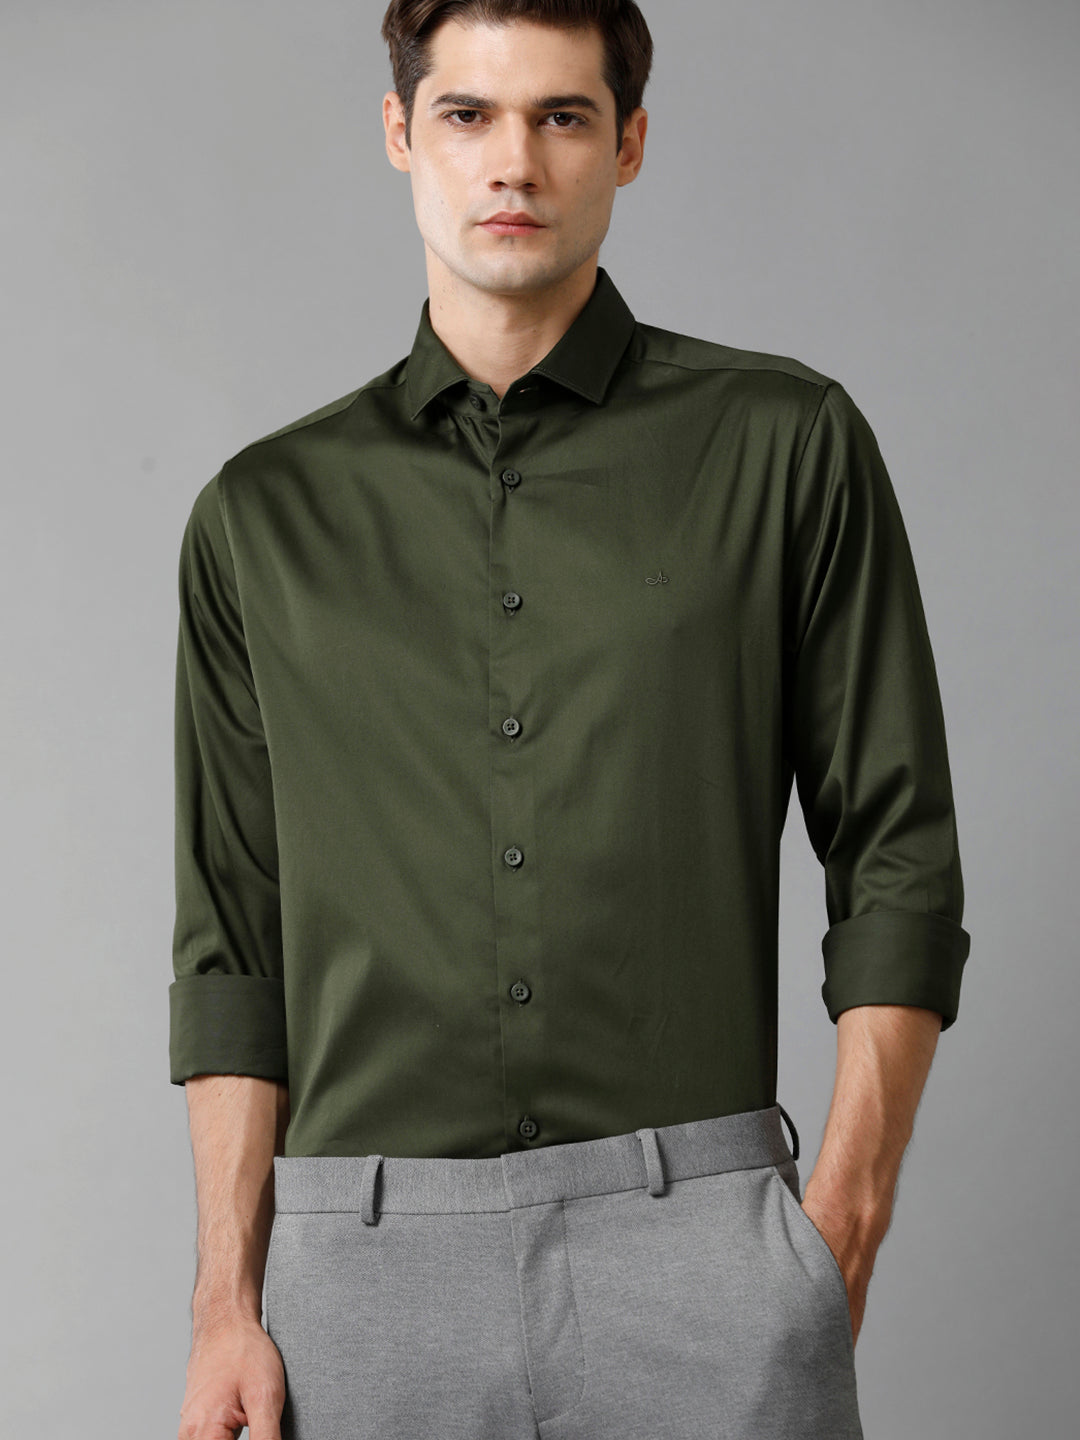 Aldeno Mens Regular Fit Solid Olive Green Formal Satin Shirt (SAUOL)